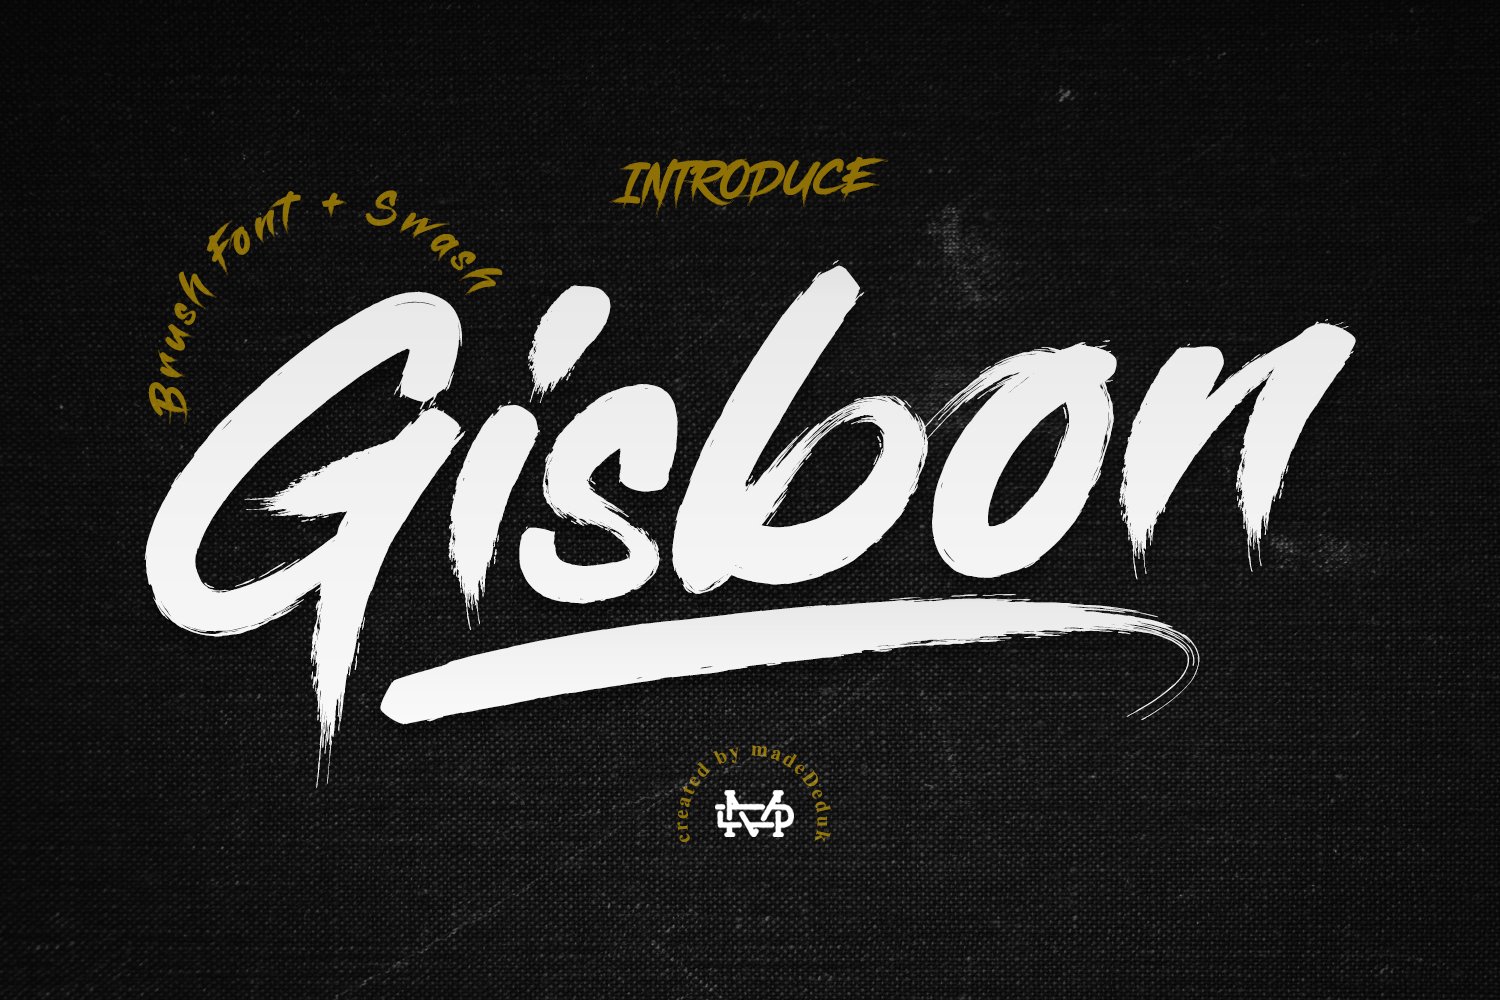 Gisbon - Brush Typeface cover image.